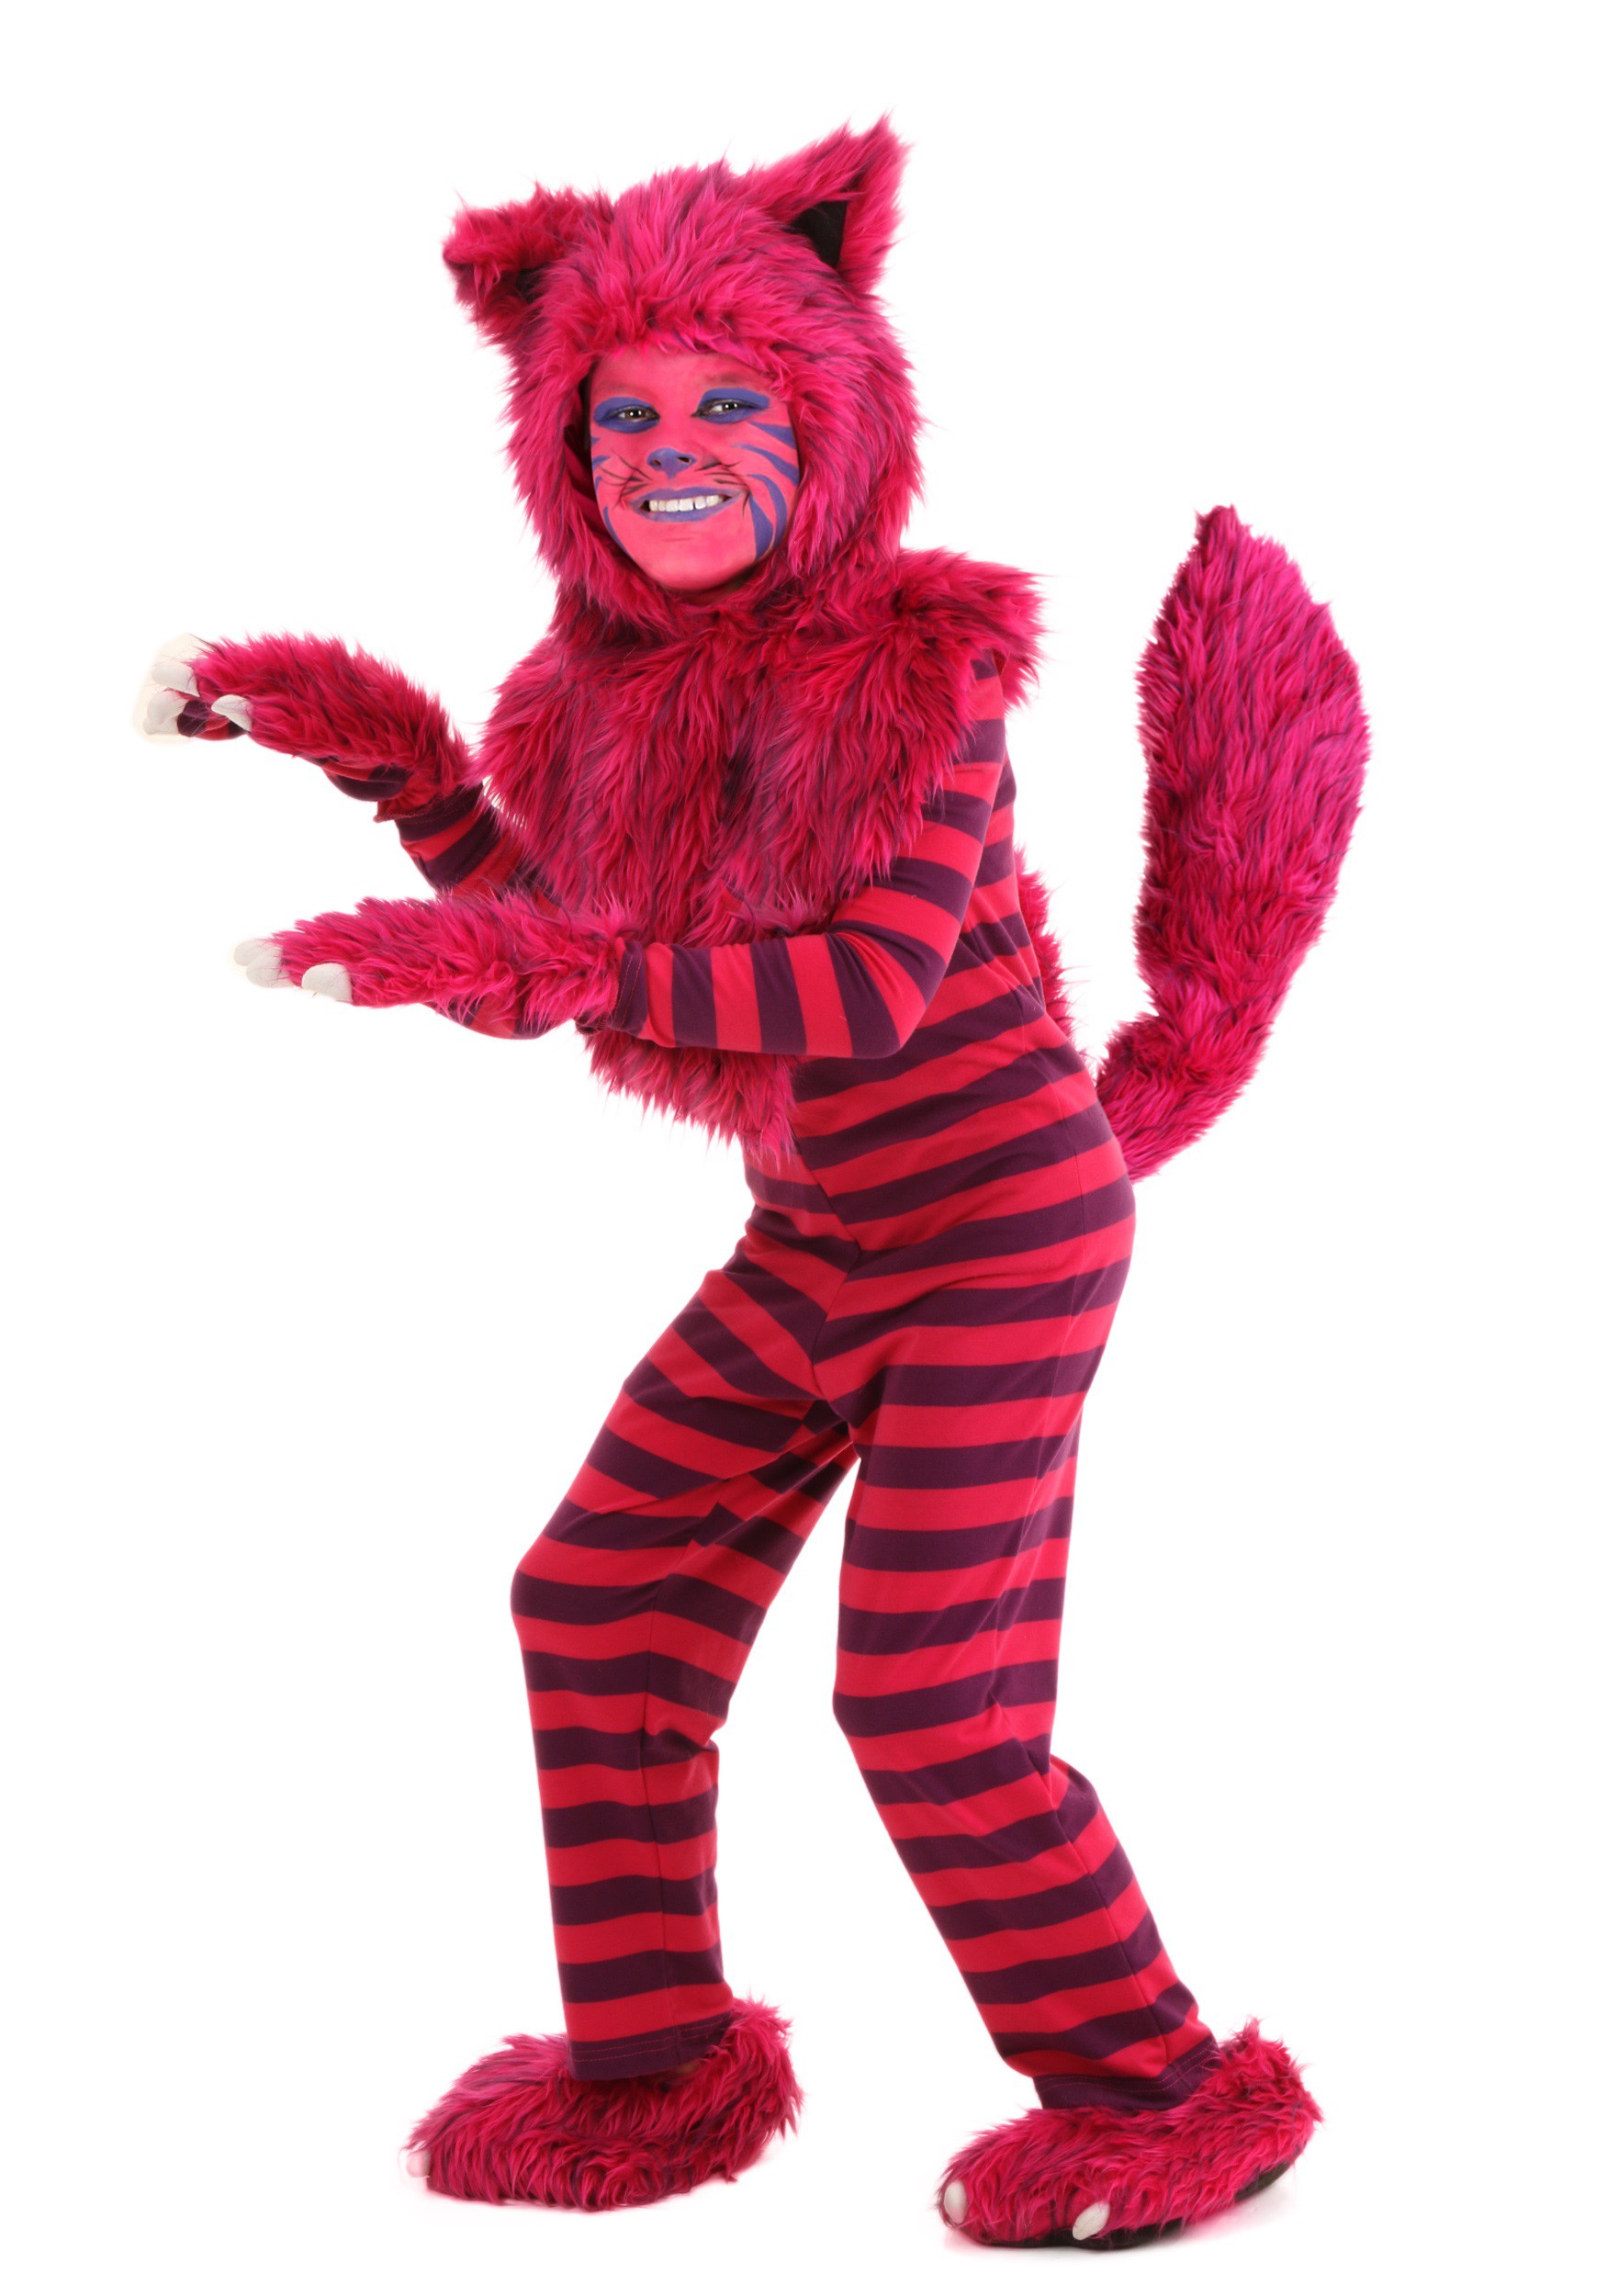 Bienvenido Sociedad Persistente Disfraz infantil de gato Cheshire Deluxe